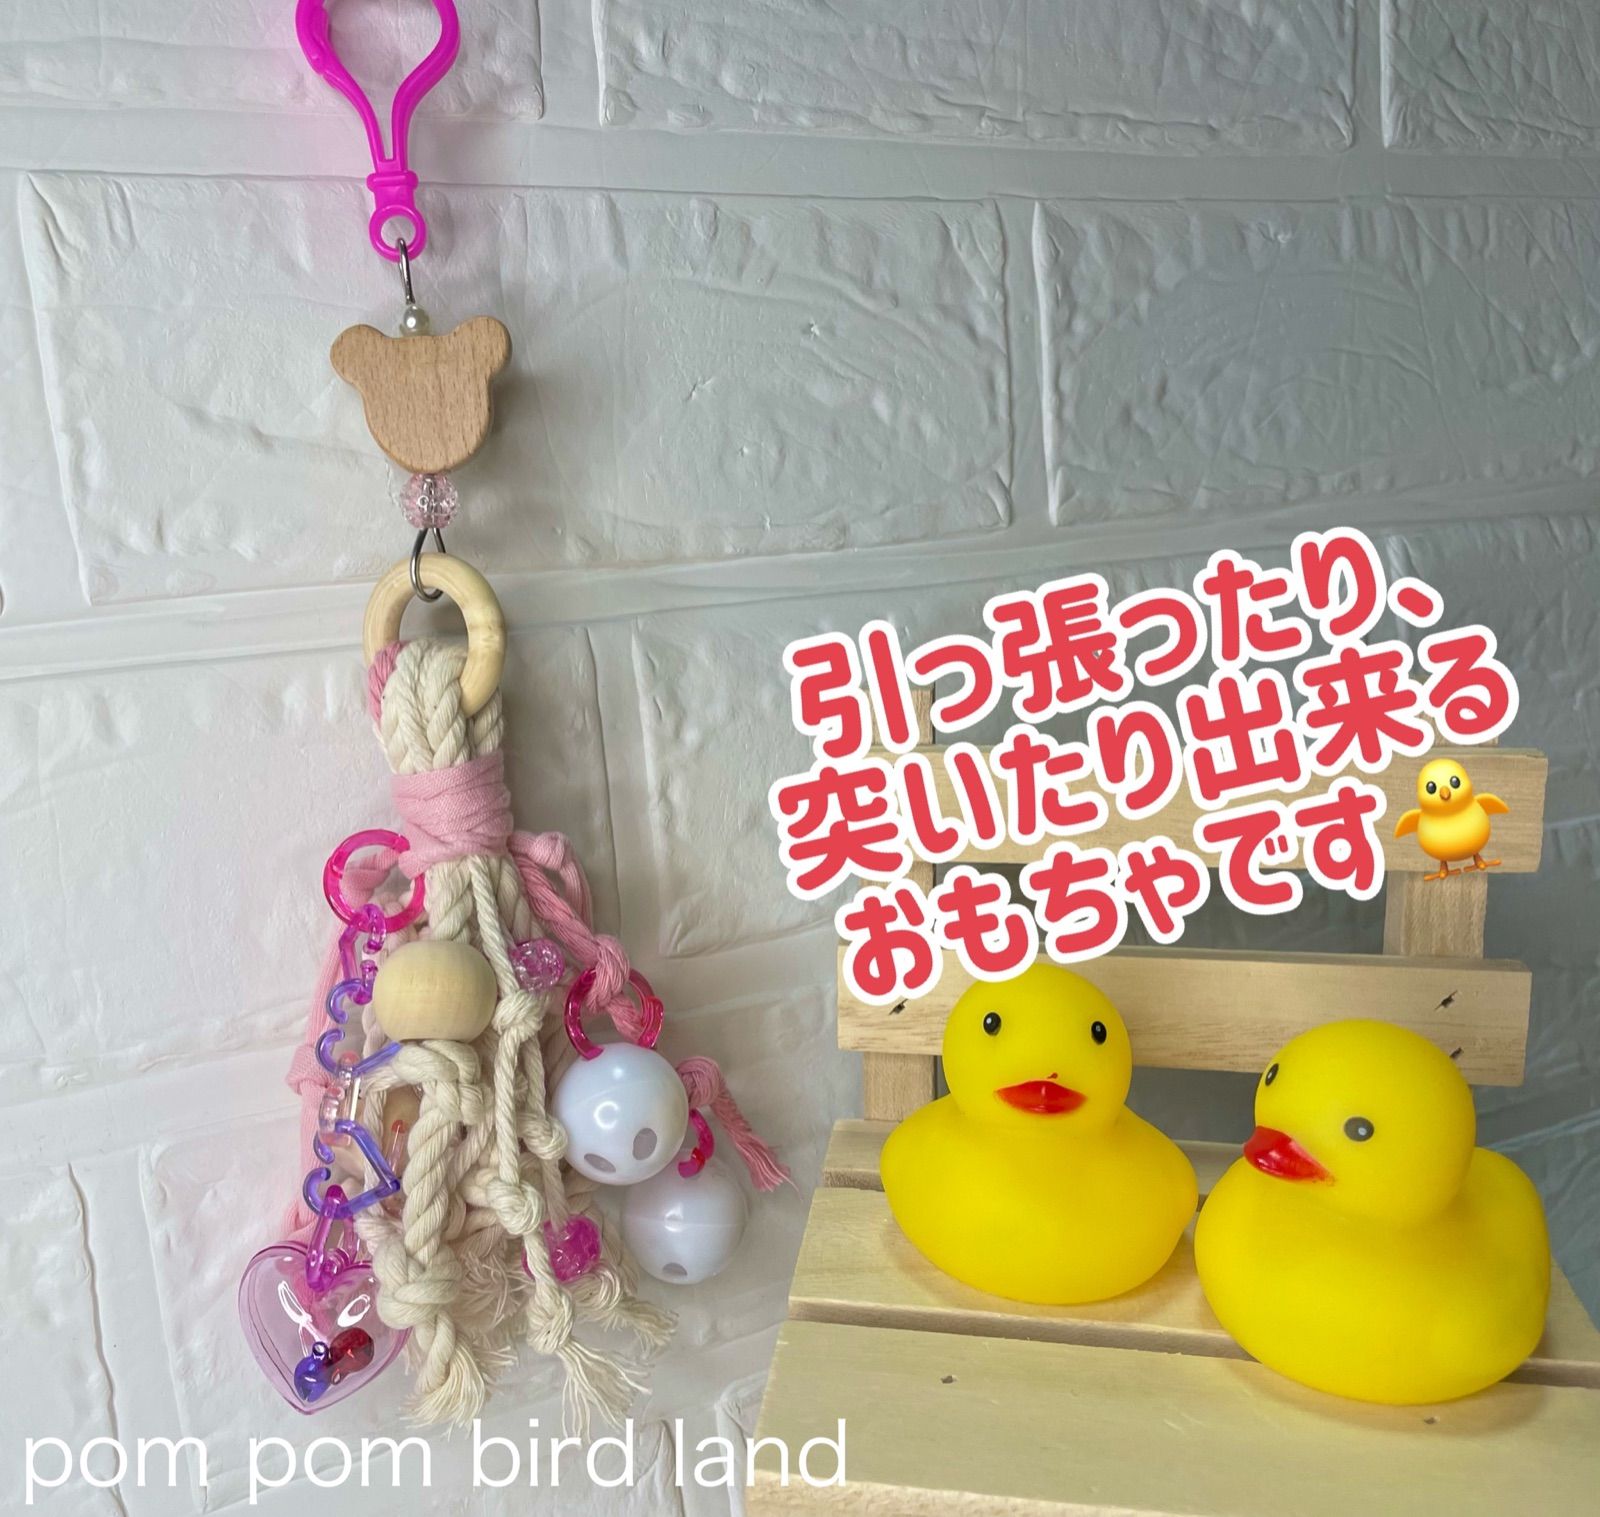 オーダー専用ページＢ♡pom pom bird land